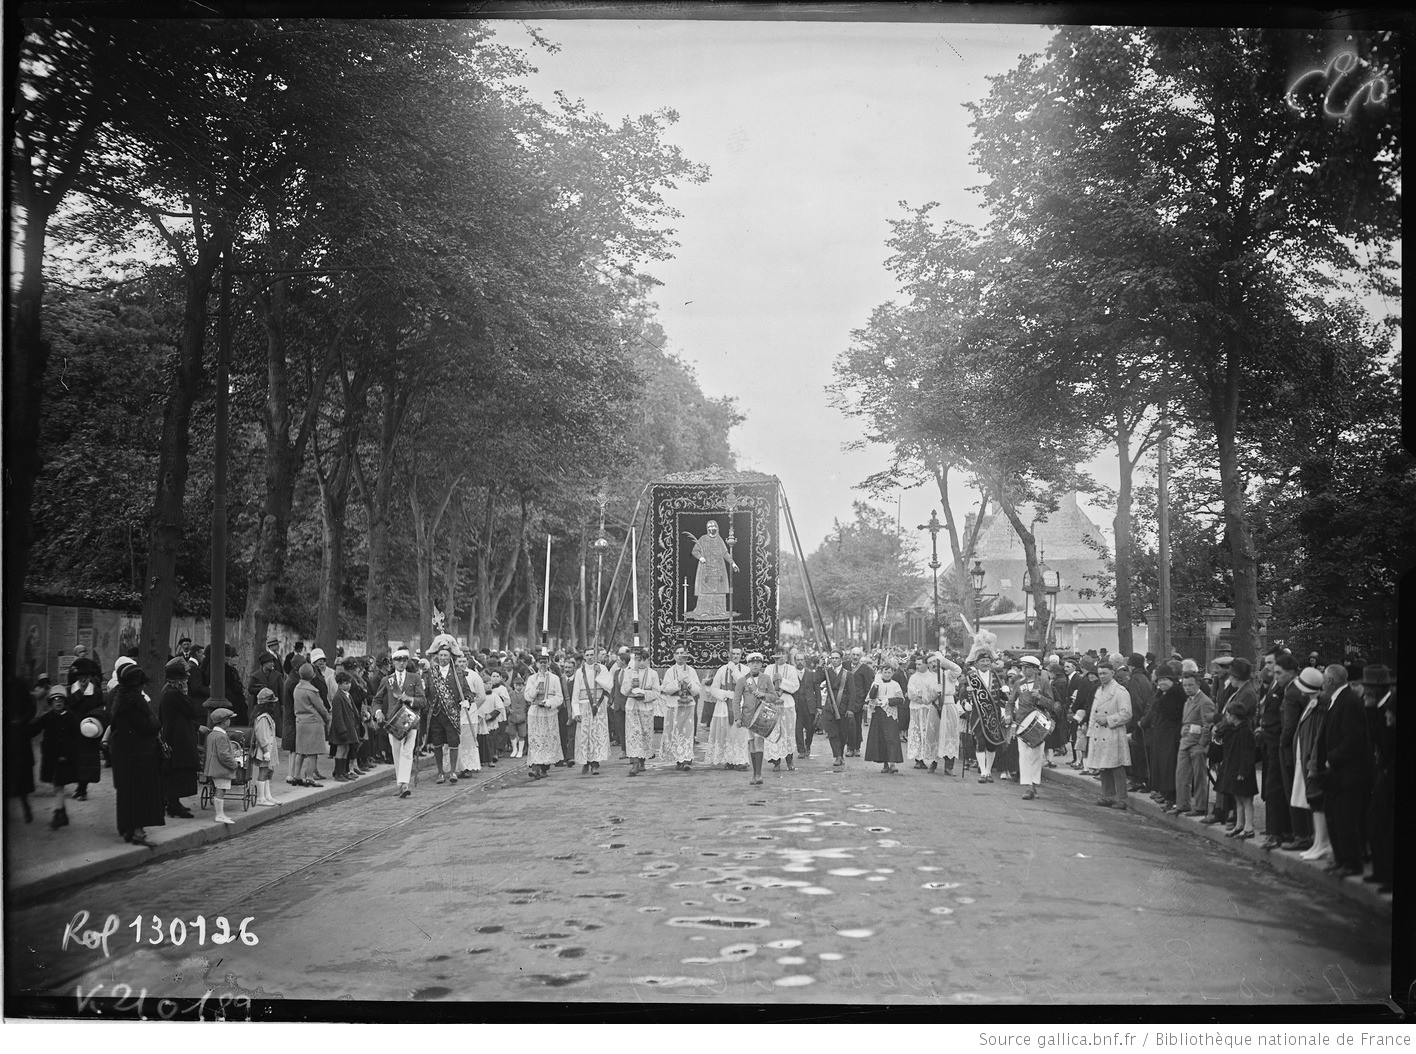 FRANCE. 17-6-28, procession de la Fête-Dieu à Caen : photographie de presse / Agence Rol. 1928. https://gallica.bnf.fr/ark:/12148/btv1b53201948r.r=fete-dieu%20procession?rk=2467823;2#